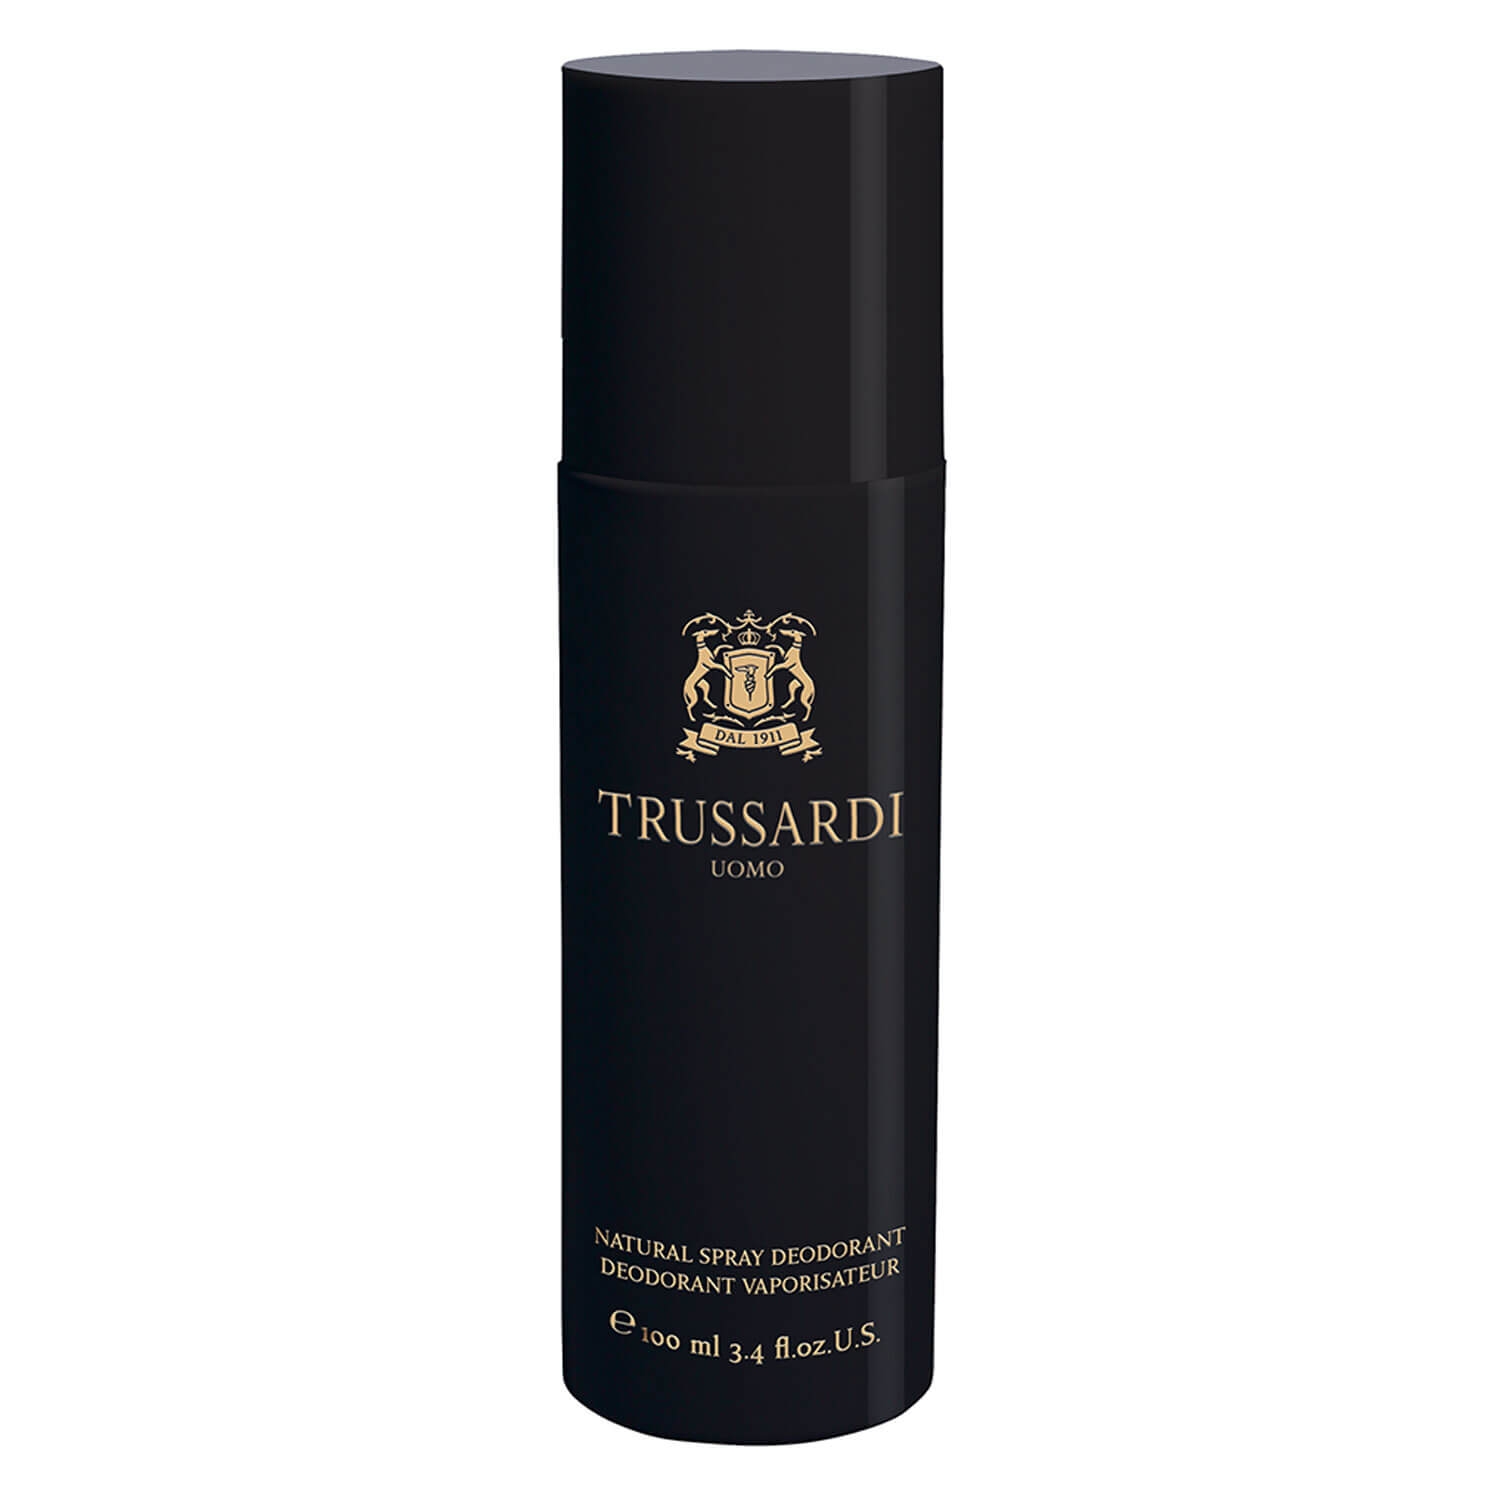 Produktbild von Trussardi Uomo - Natural Spray Deodorant